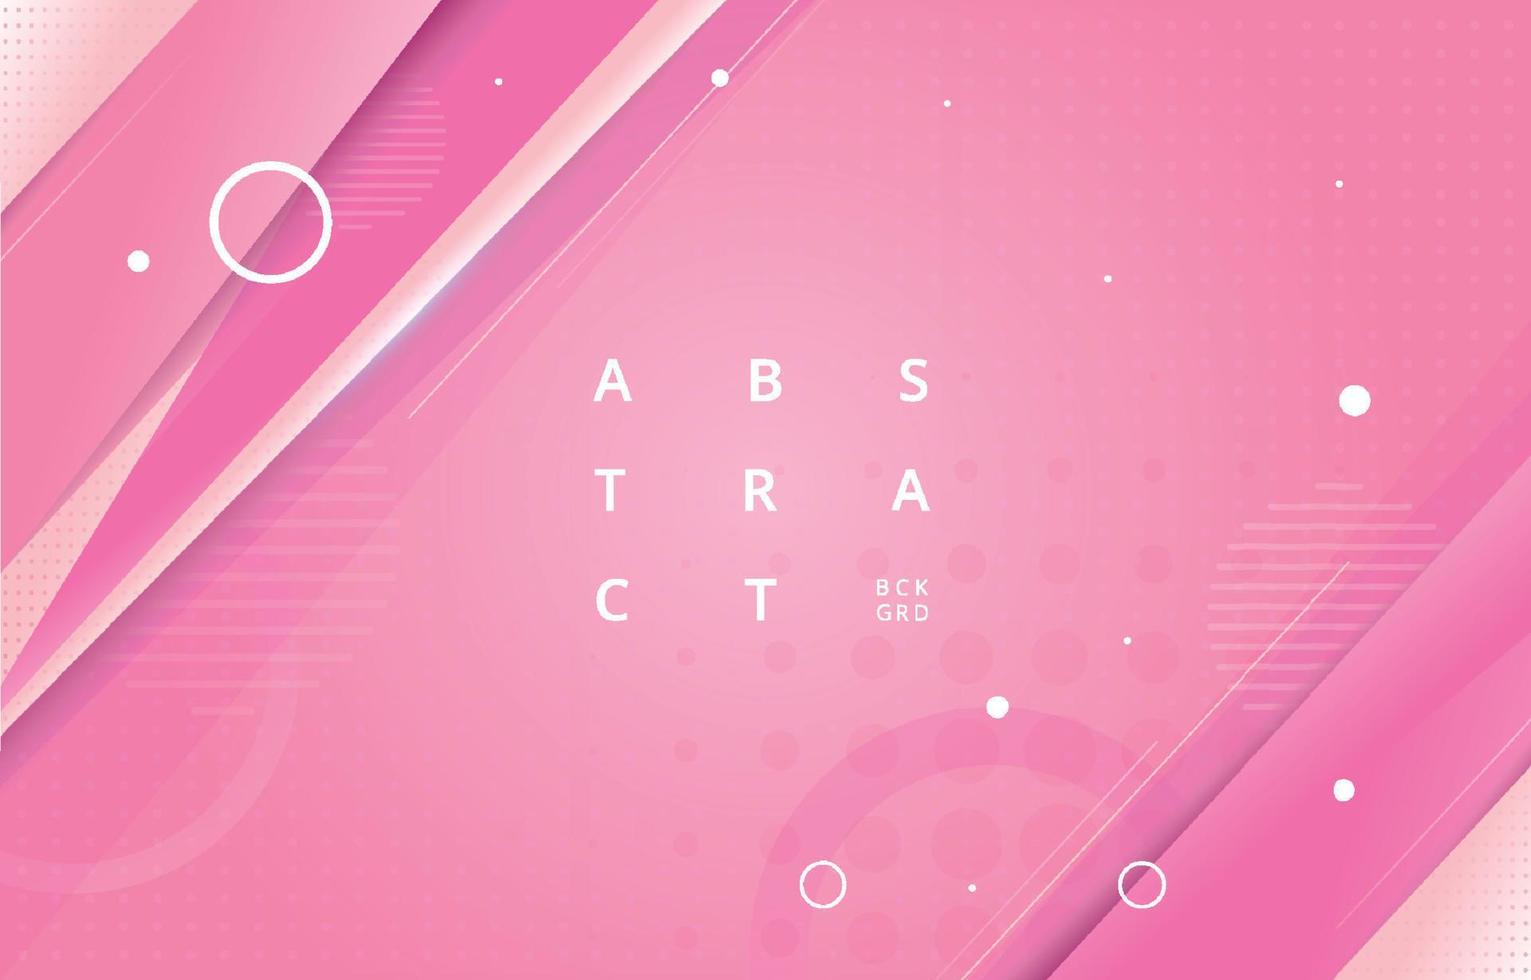 rosa abstrakter Hintergrund Rev vektor